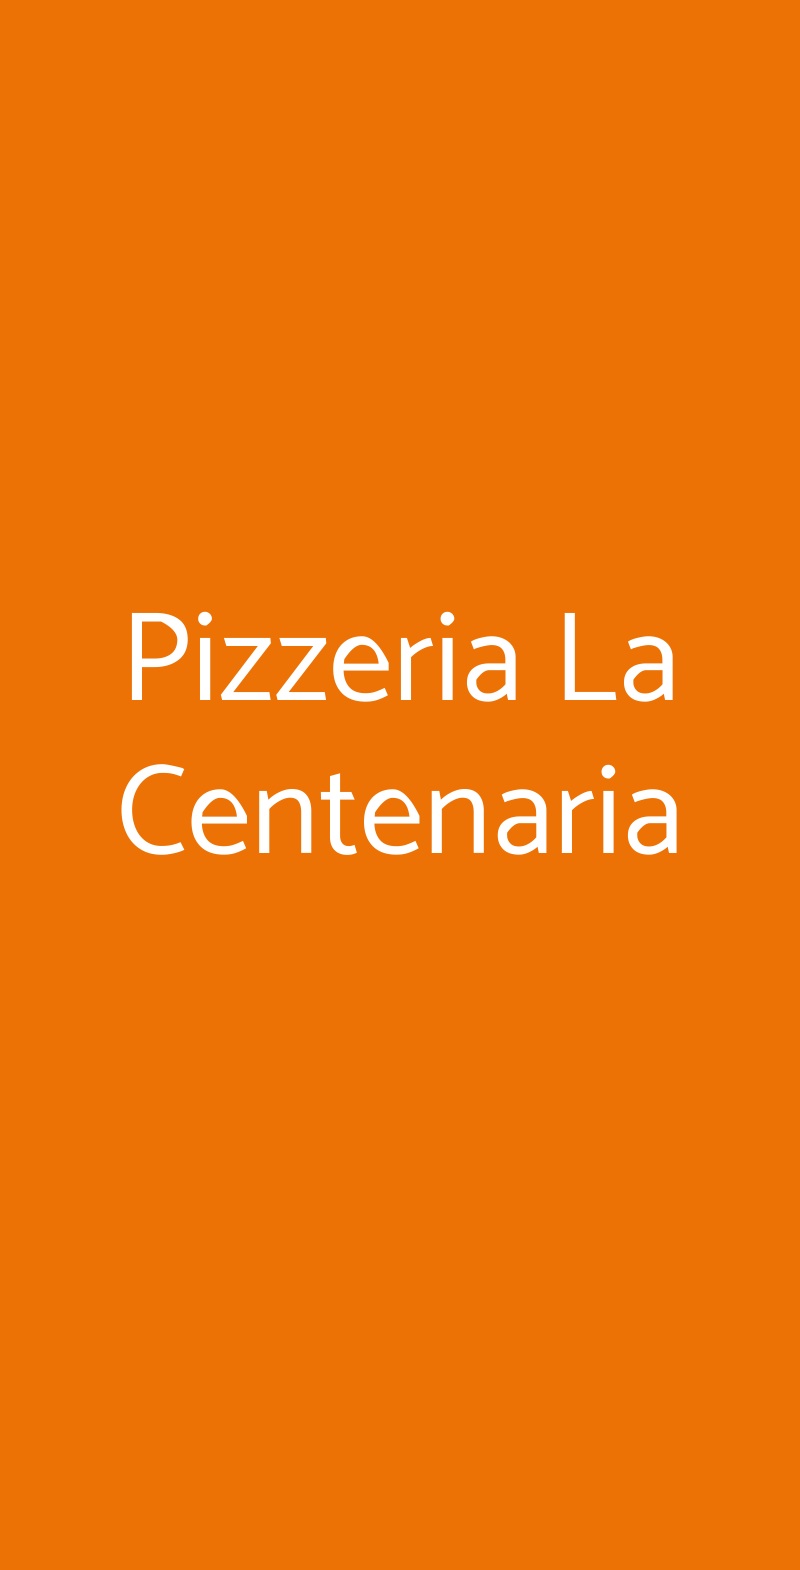 Pizzeria La Centenaria Napoli menù 1 pagina